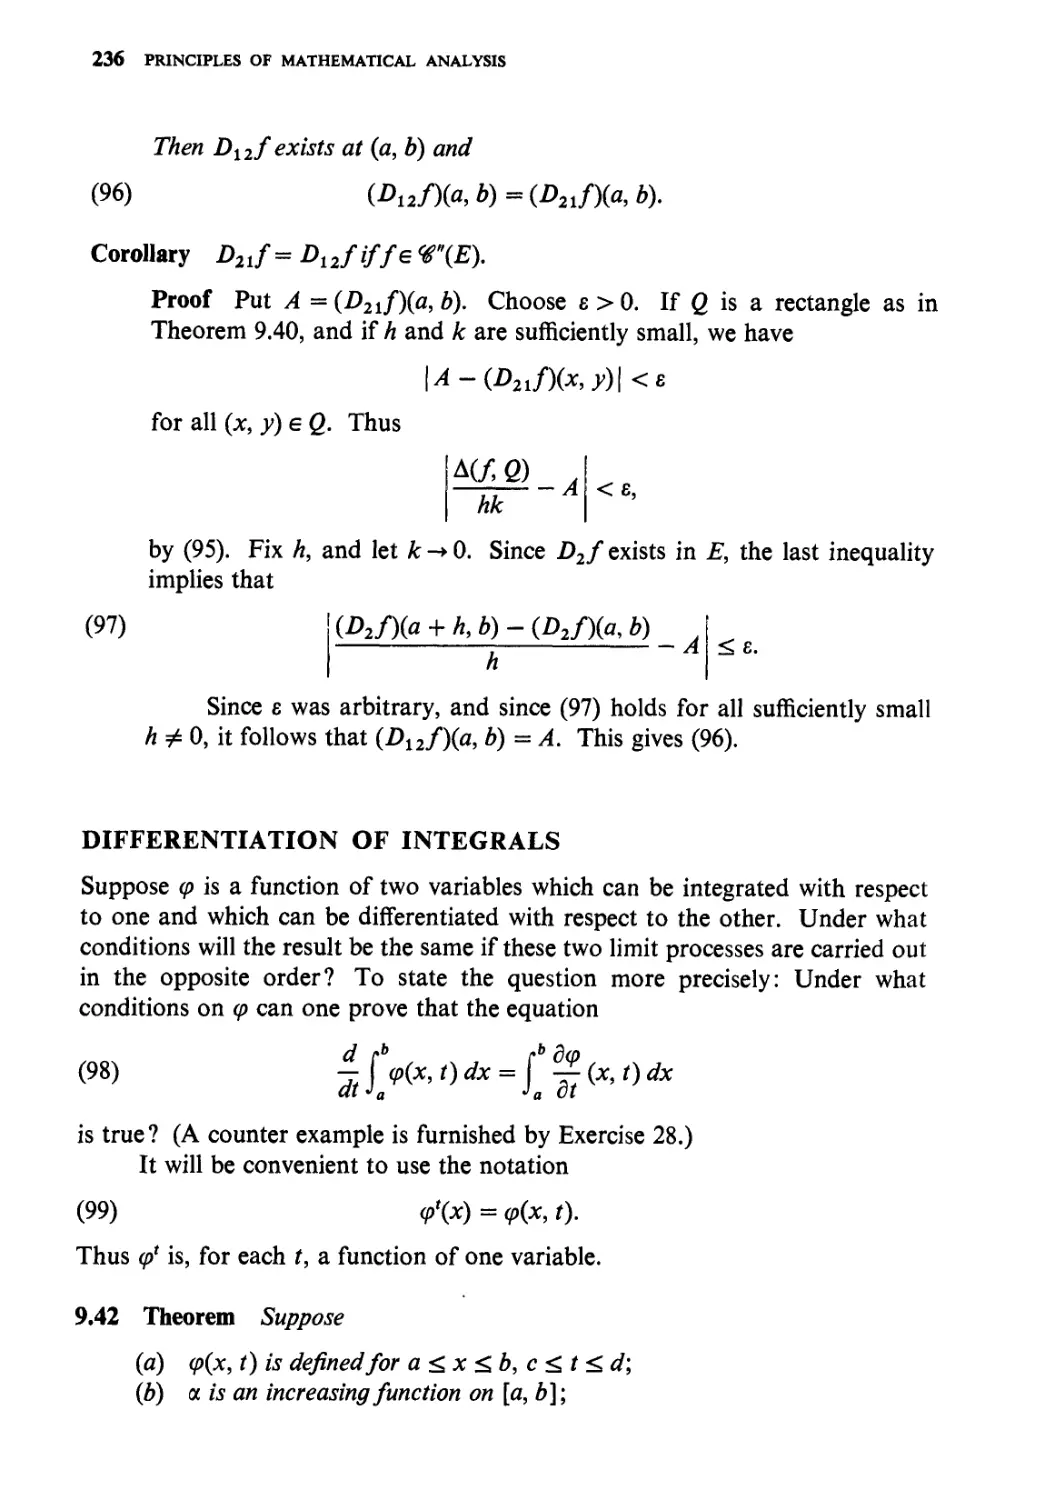 Differentiation of integrals